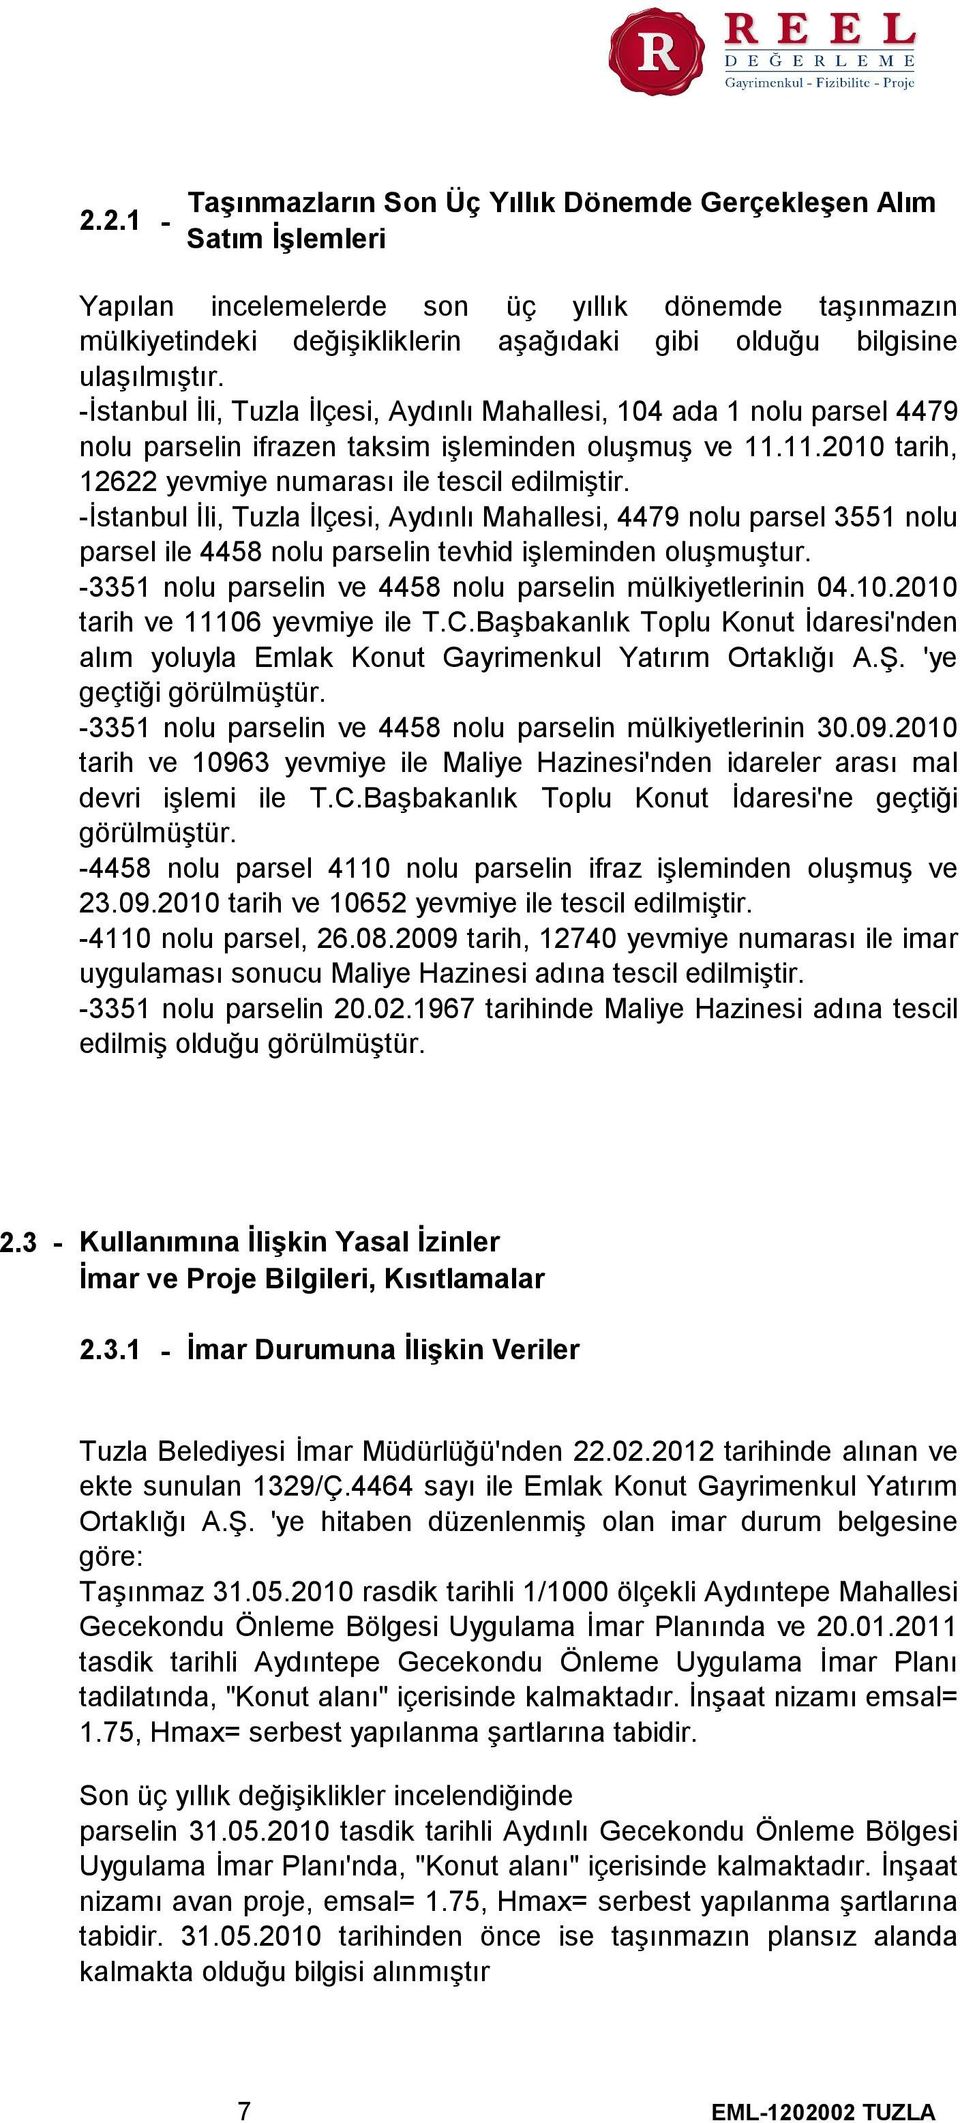 -İstanbul İli, Tuzla İlçesi, Aydınlı Mahallesi, 4479 nolu parsel 3551 nolu parsel ile 4458 nolu parselin tevhid işleminden oluşmuştur. -3351 nolu parselin ve 4458 nolu parselin mülkiyetlerinin 04.10.